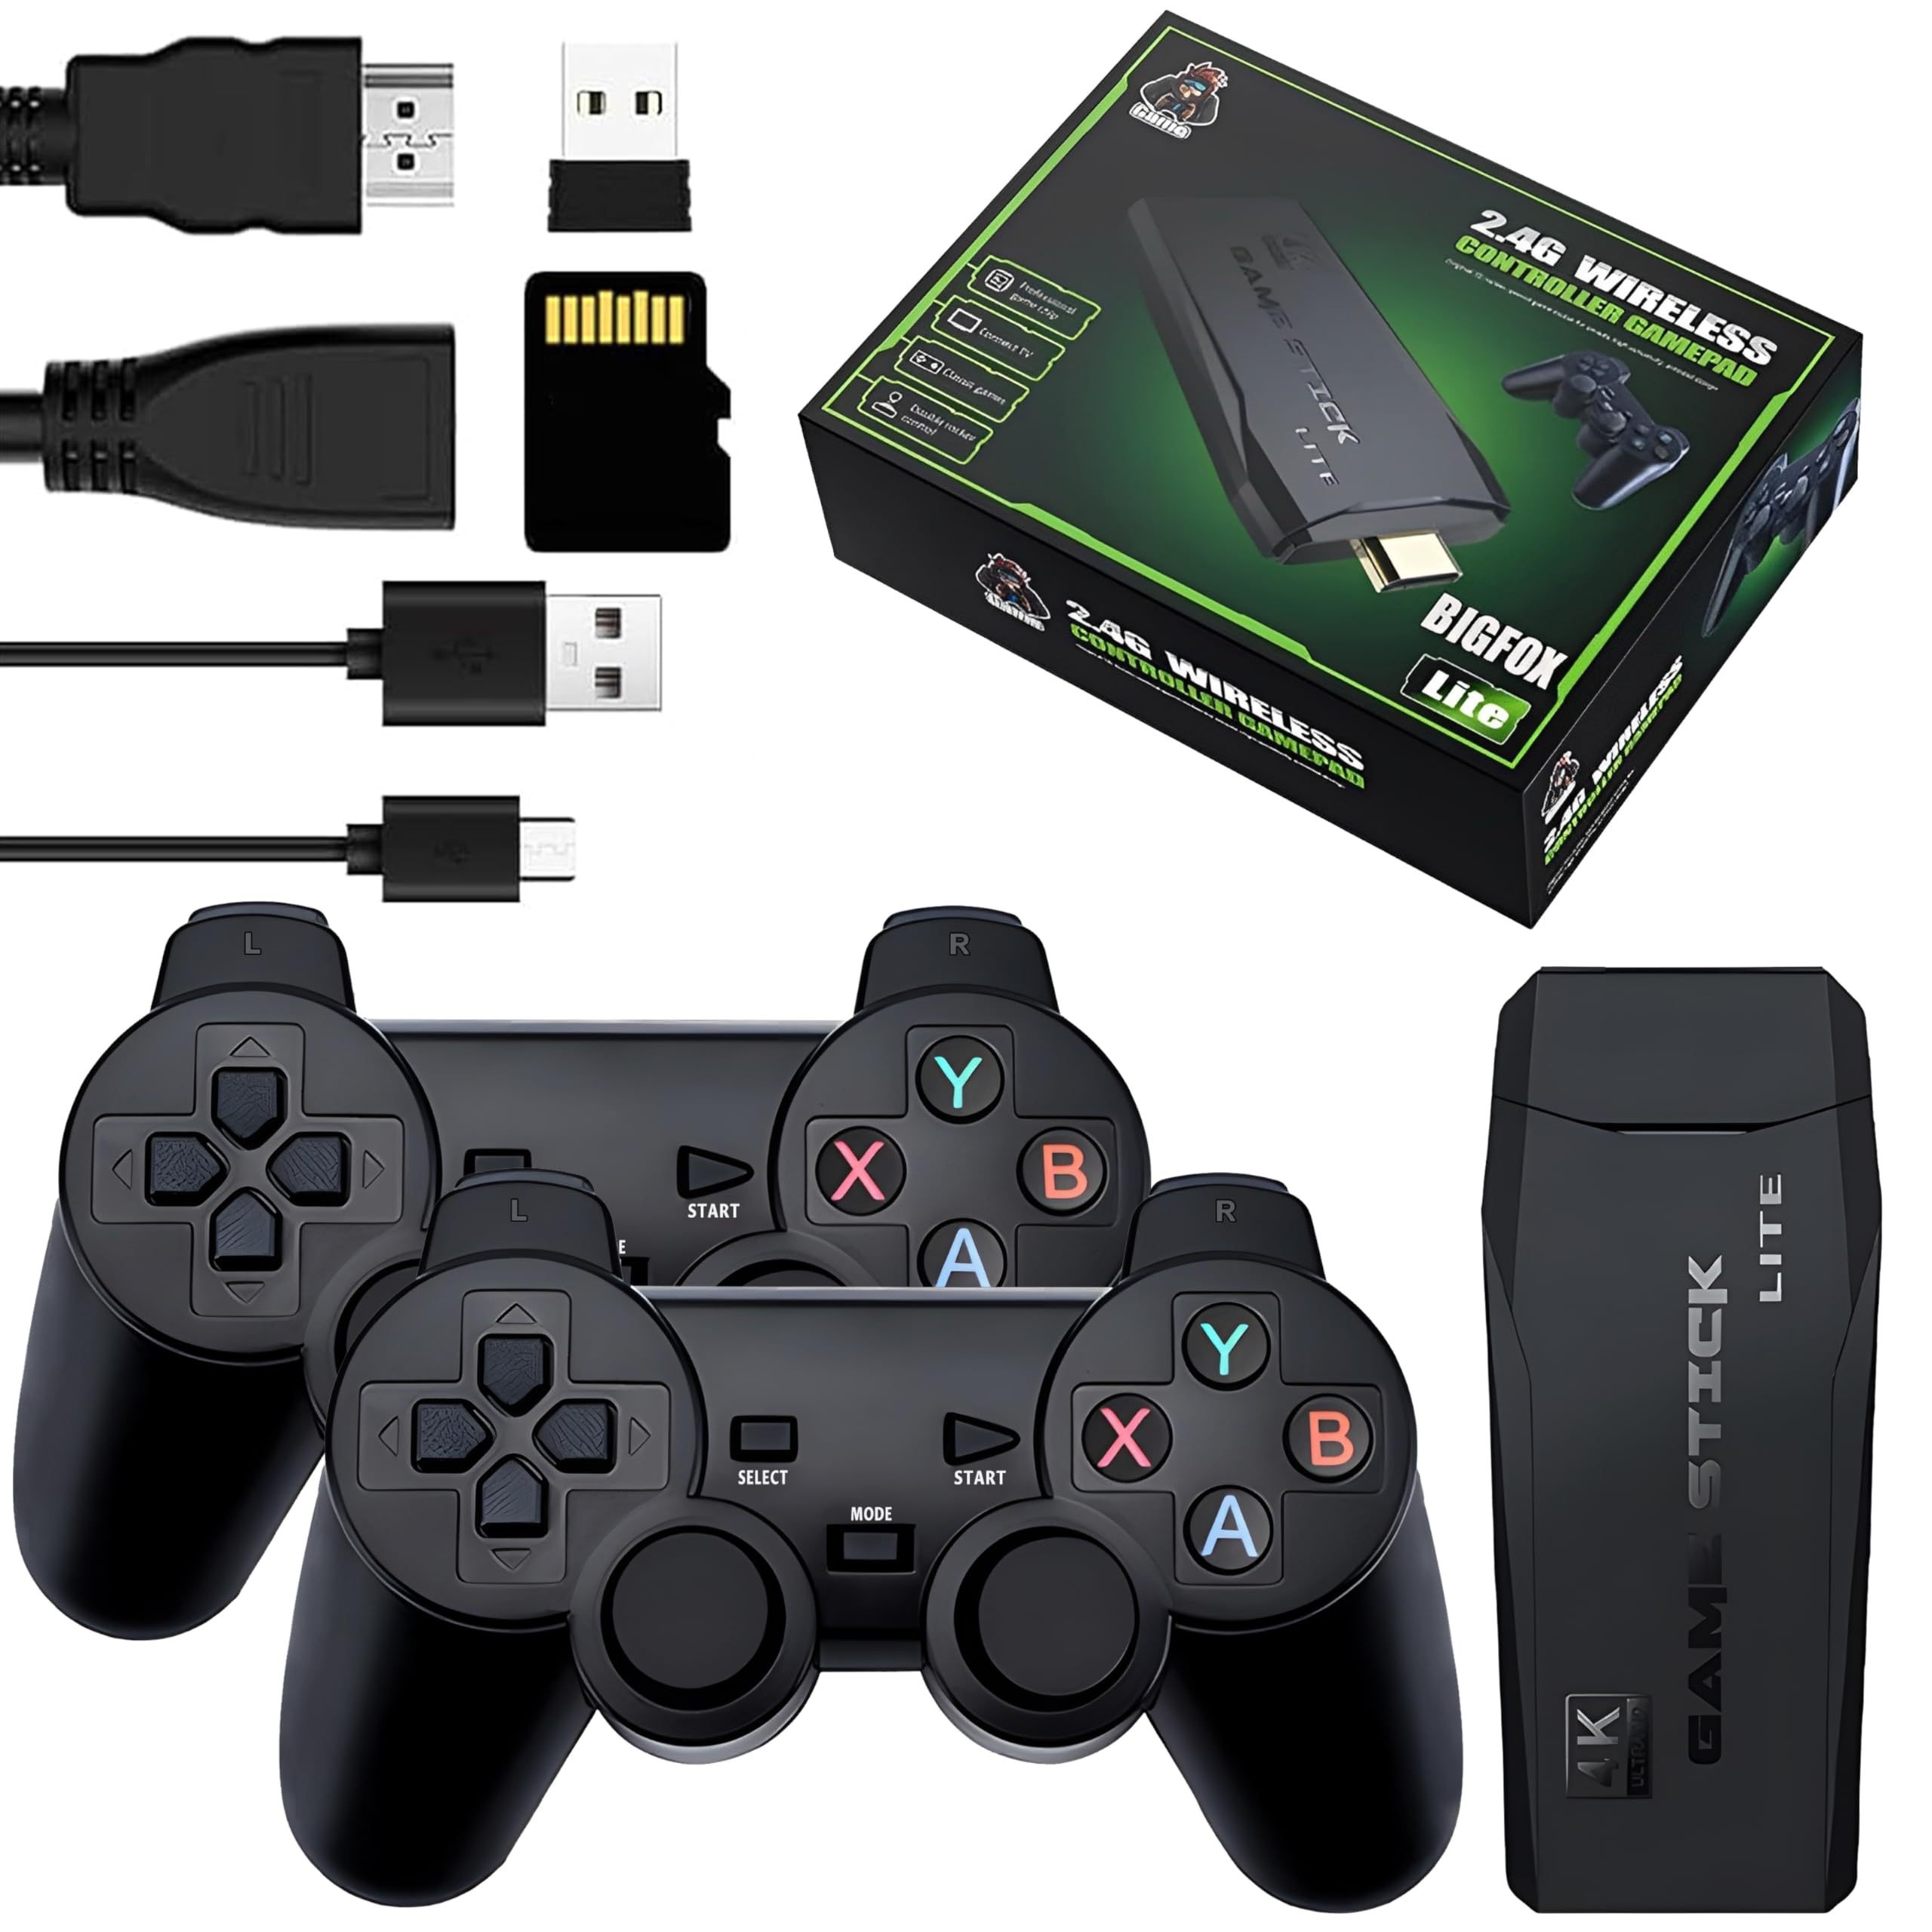  Game Stick 4K 64 GB - 10,000 juegos retro, consolas de juegos,  juego de nostalgia plug & play, consola de juegos retro inalámbrica, 2.4G  inalámbrica 4K salida HDMI palo de juegos